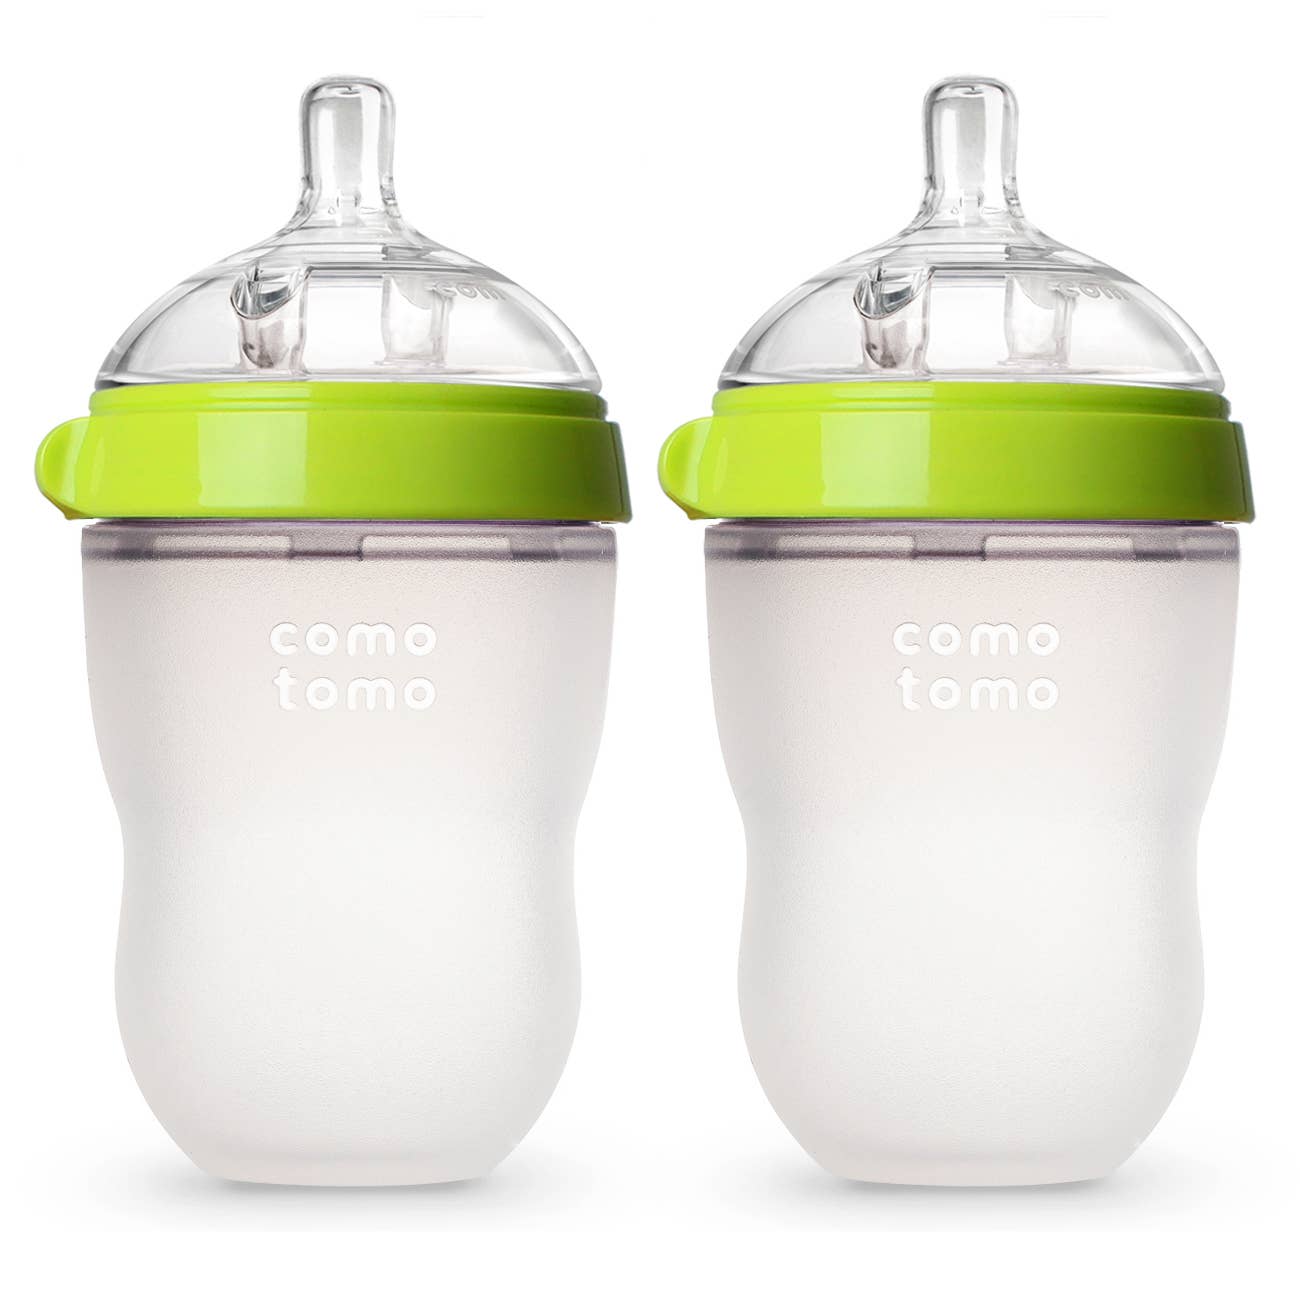 Comotomo Baby Bottle, Double Pack - 8 oz - Green